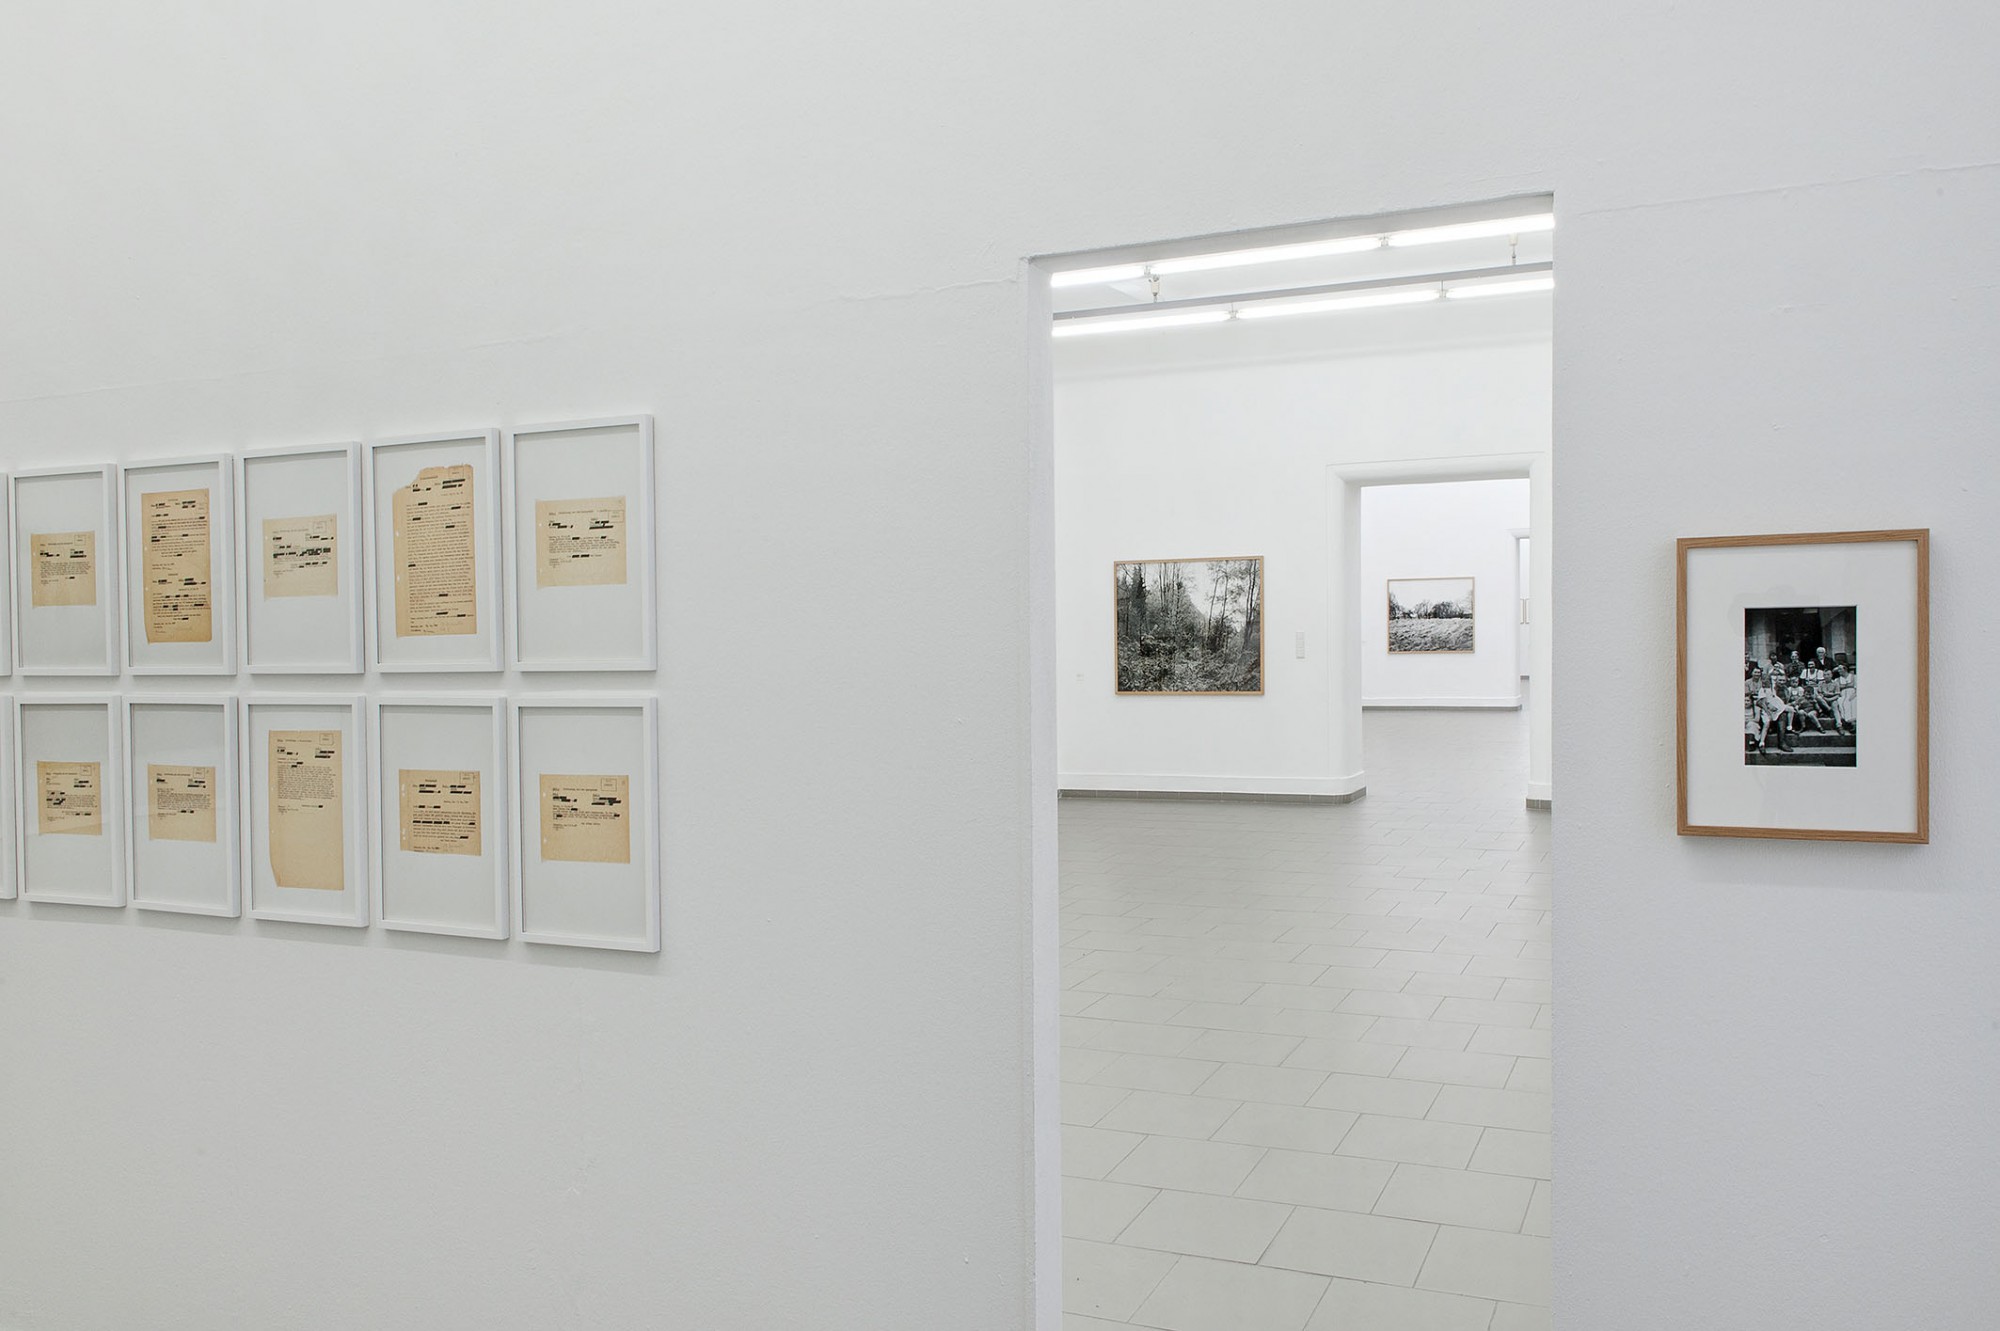 Anne Heinlein und Göran Gnaudschun, WÜSTUNGEN, Ausstellung „Haus am Kleistpark”, Berlin, 2017